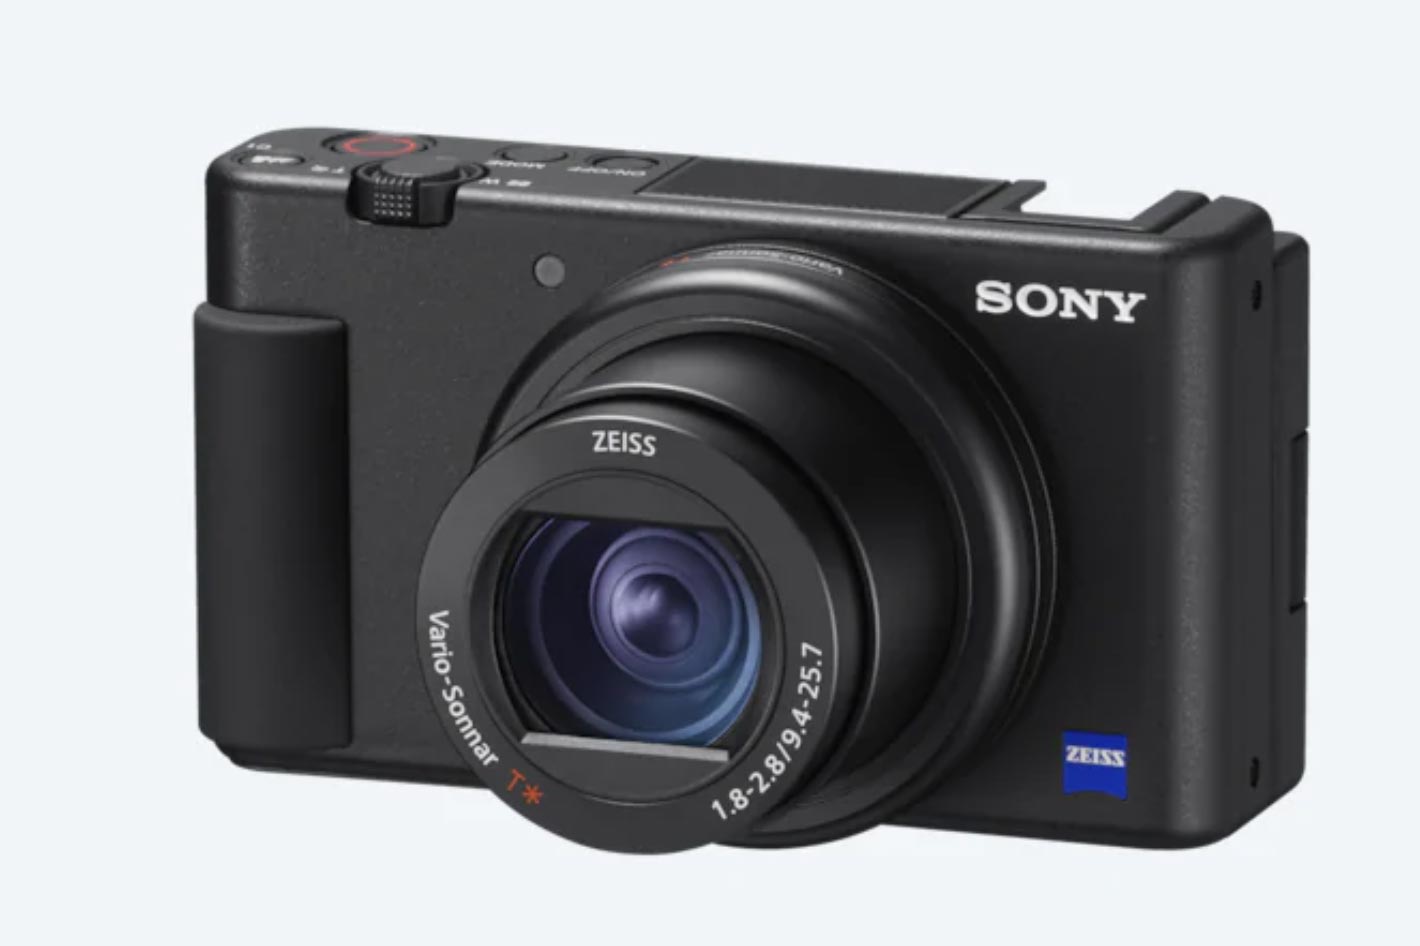 Sony ZV-1, built to meet the needs of today’s video creators